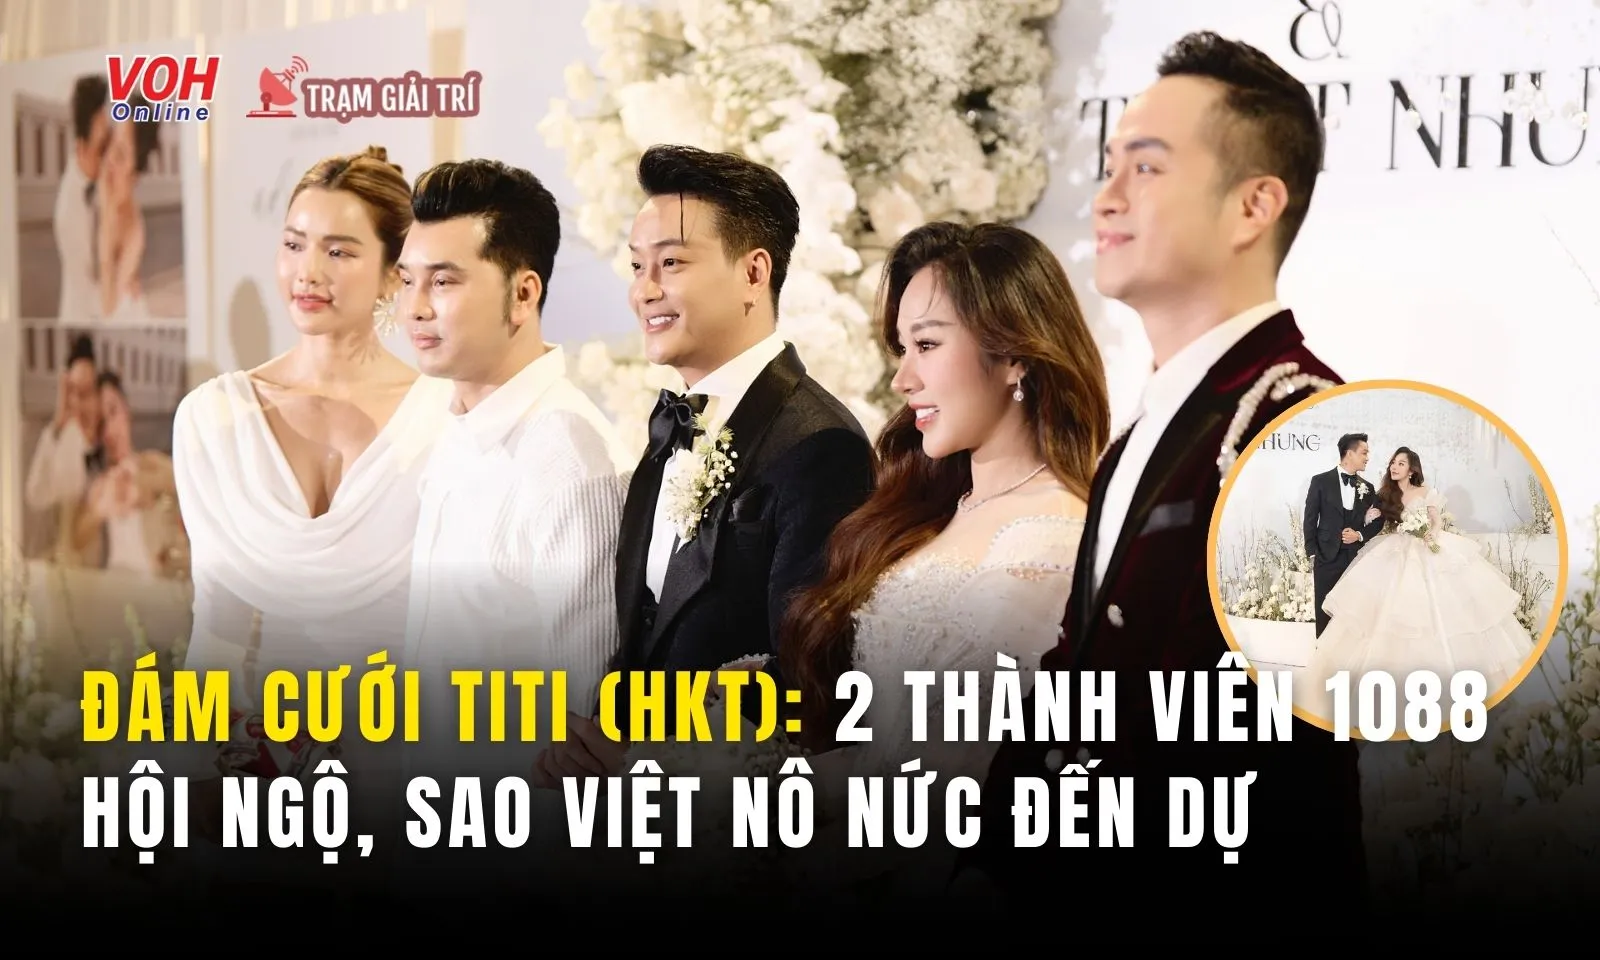 Đám cưới TiTi (HKT): 2 thành viên 1088 hội ngộ, sao Việt nô nức đến chúc mừng